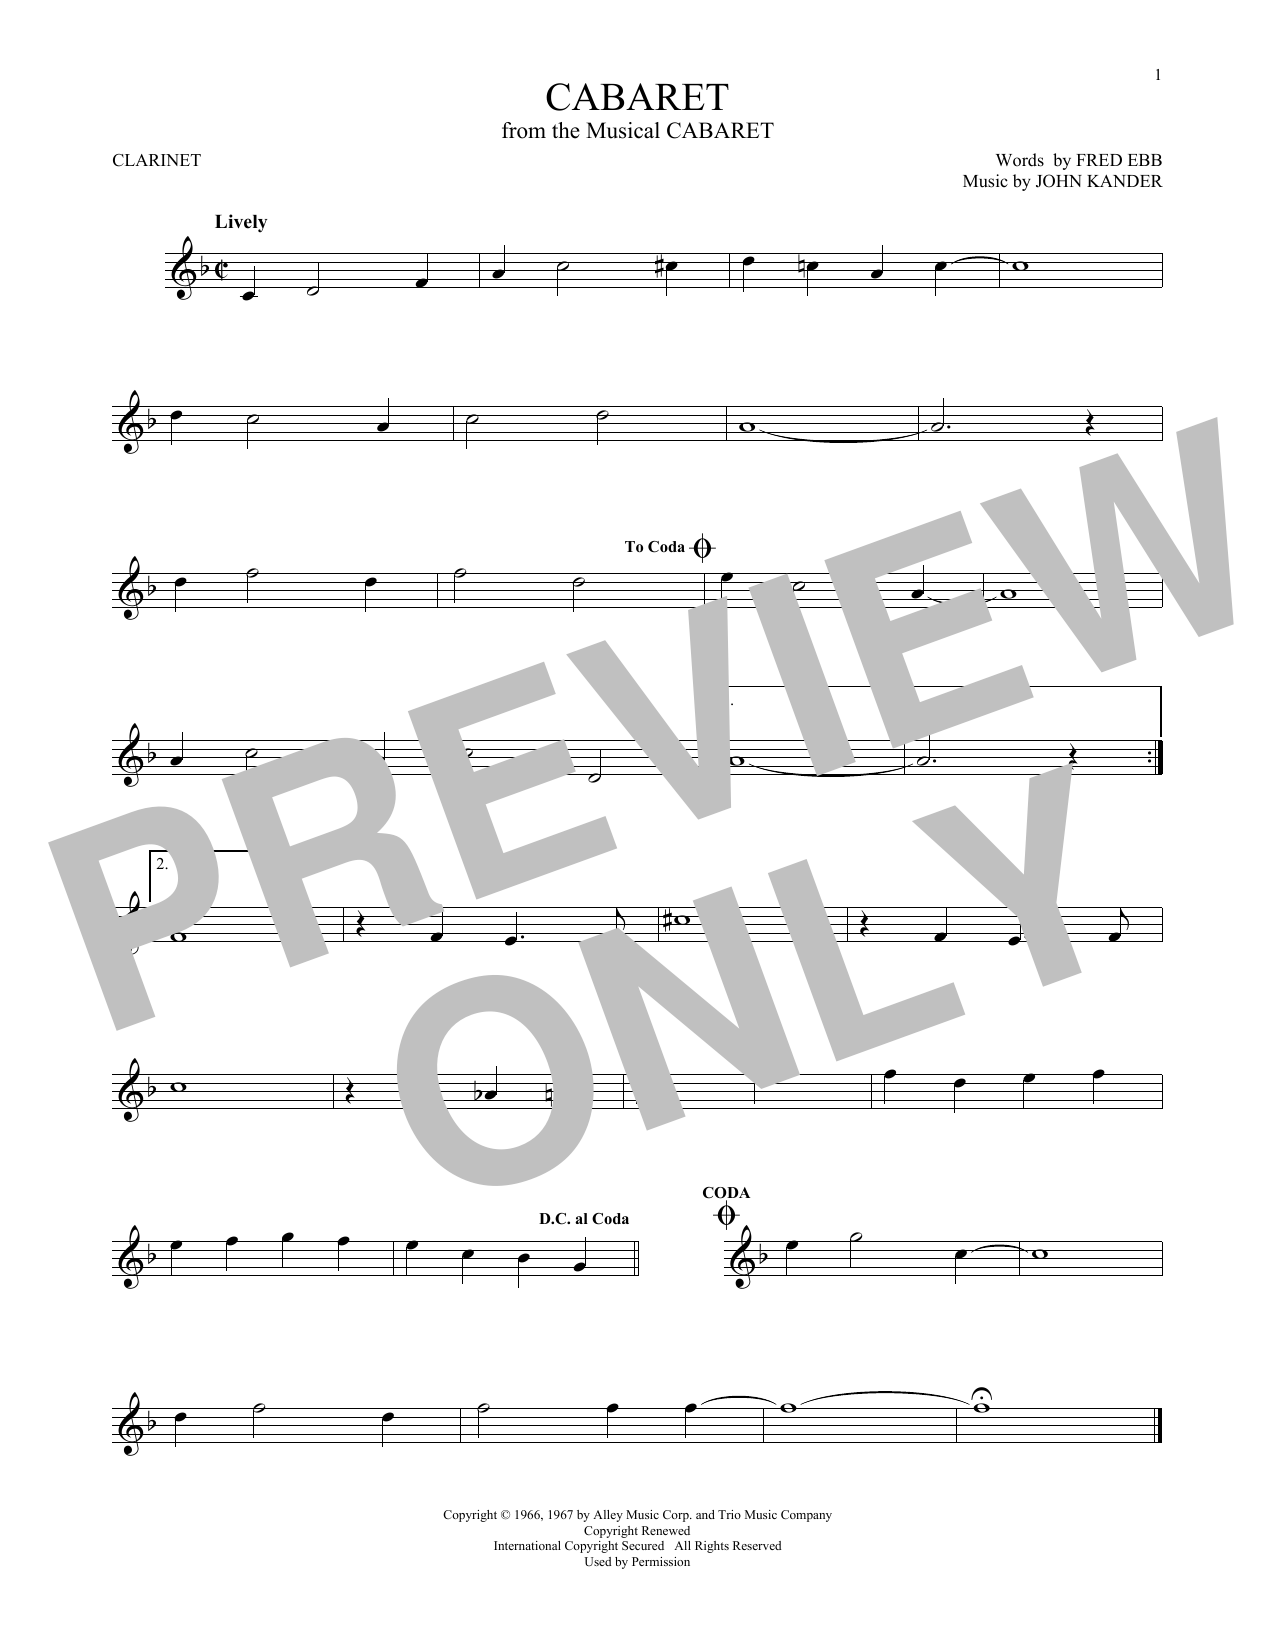 John Kander & Fred Ebb Cabaret Sheet Music Notes & Chords for Trumpet - Download or Print PDF